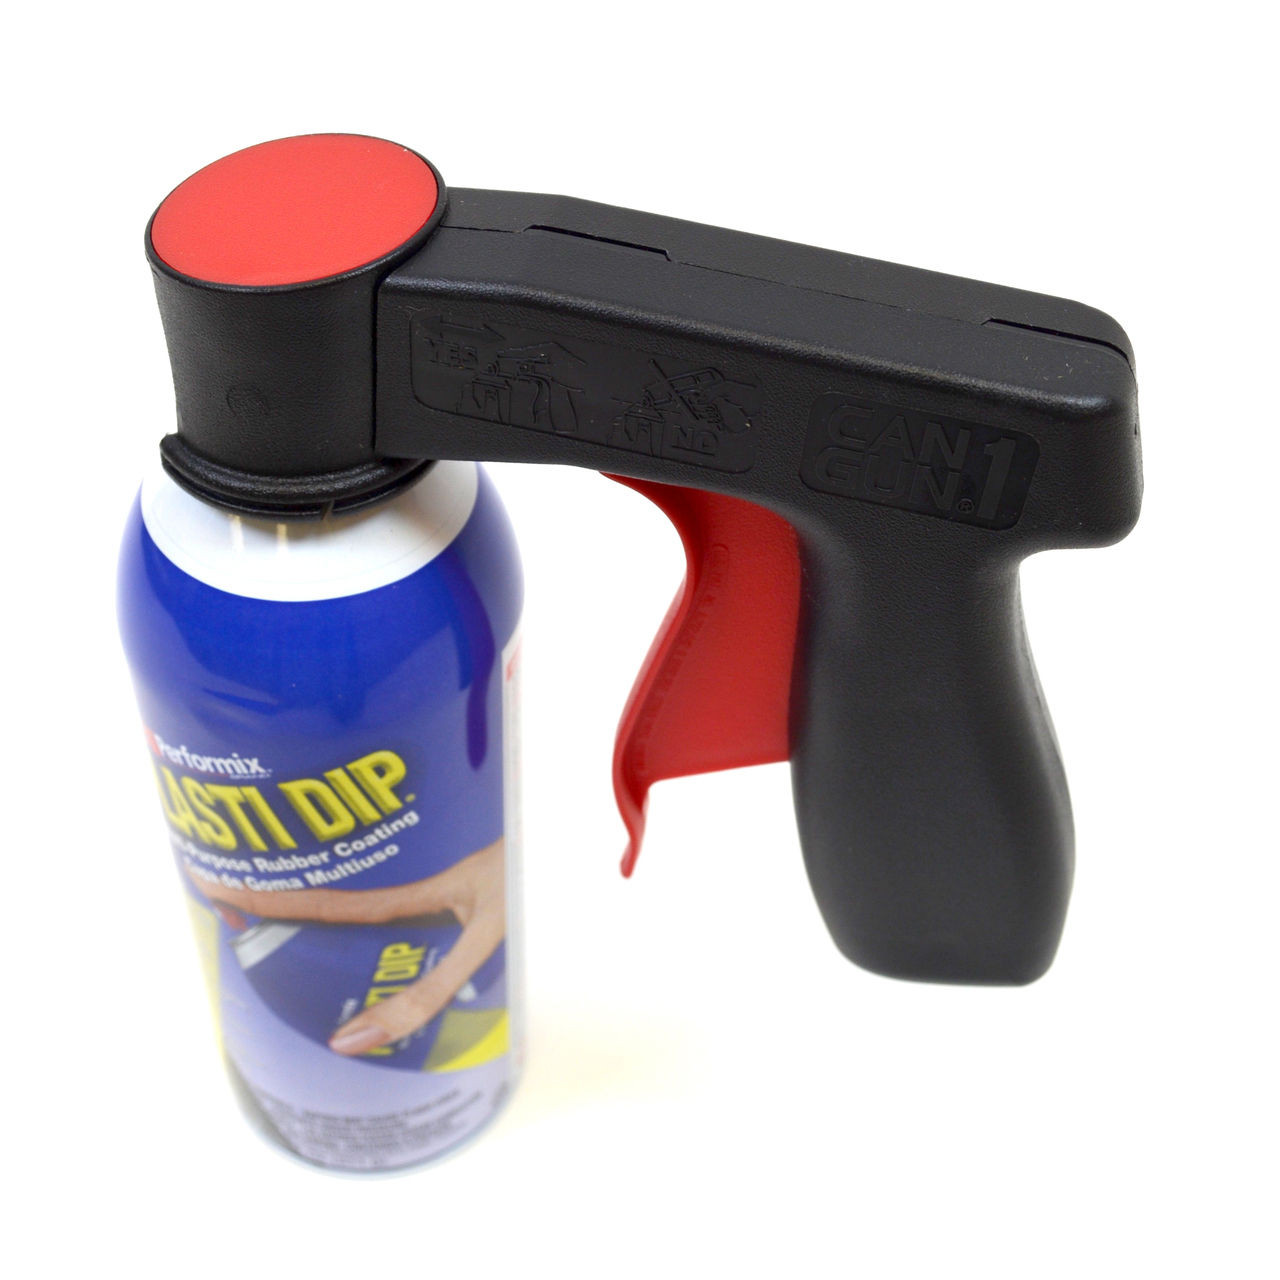 Plasti Dip Aerosol Spray, Black, Case of 6, 11203-6 - AWarehouseFull